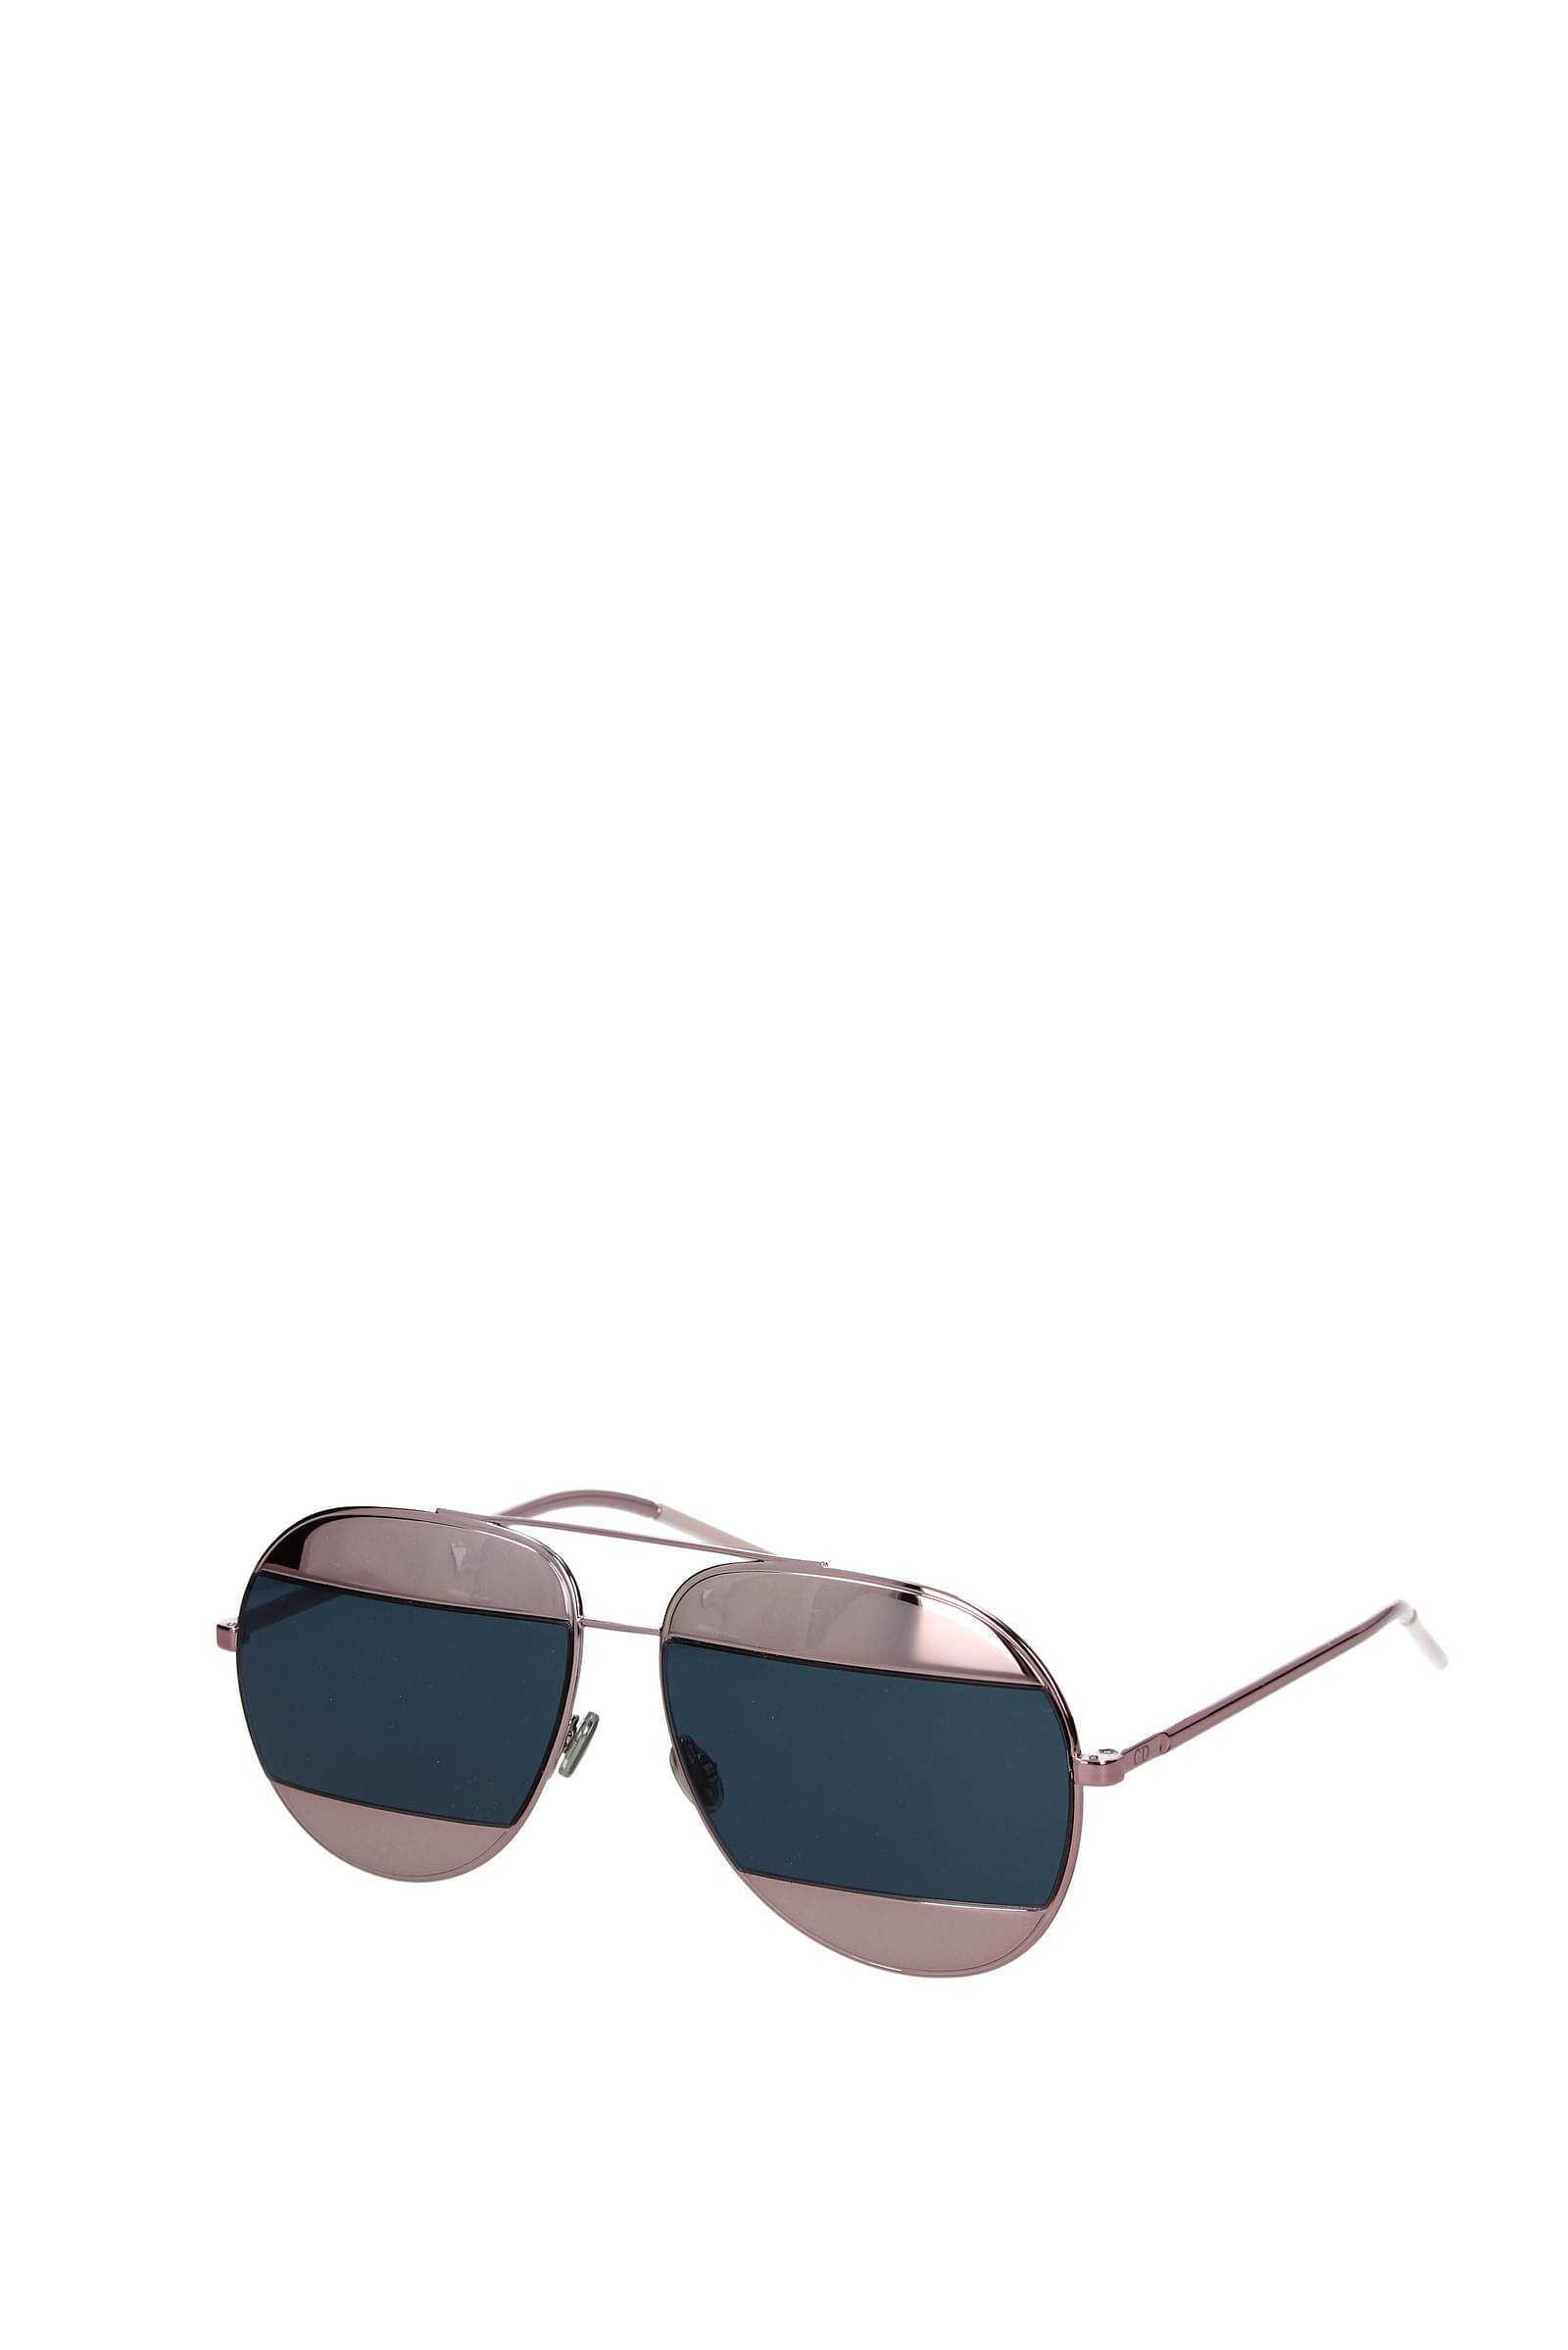 Designer Frames Outlet Dior Sunglasses HARDIOR